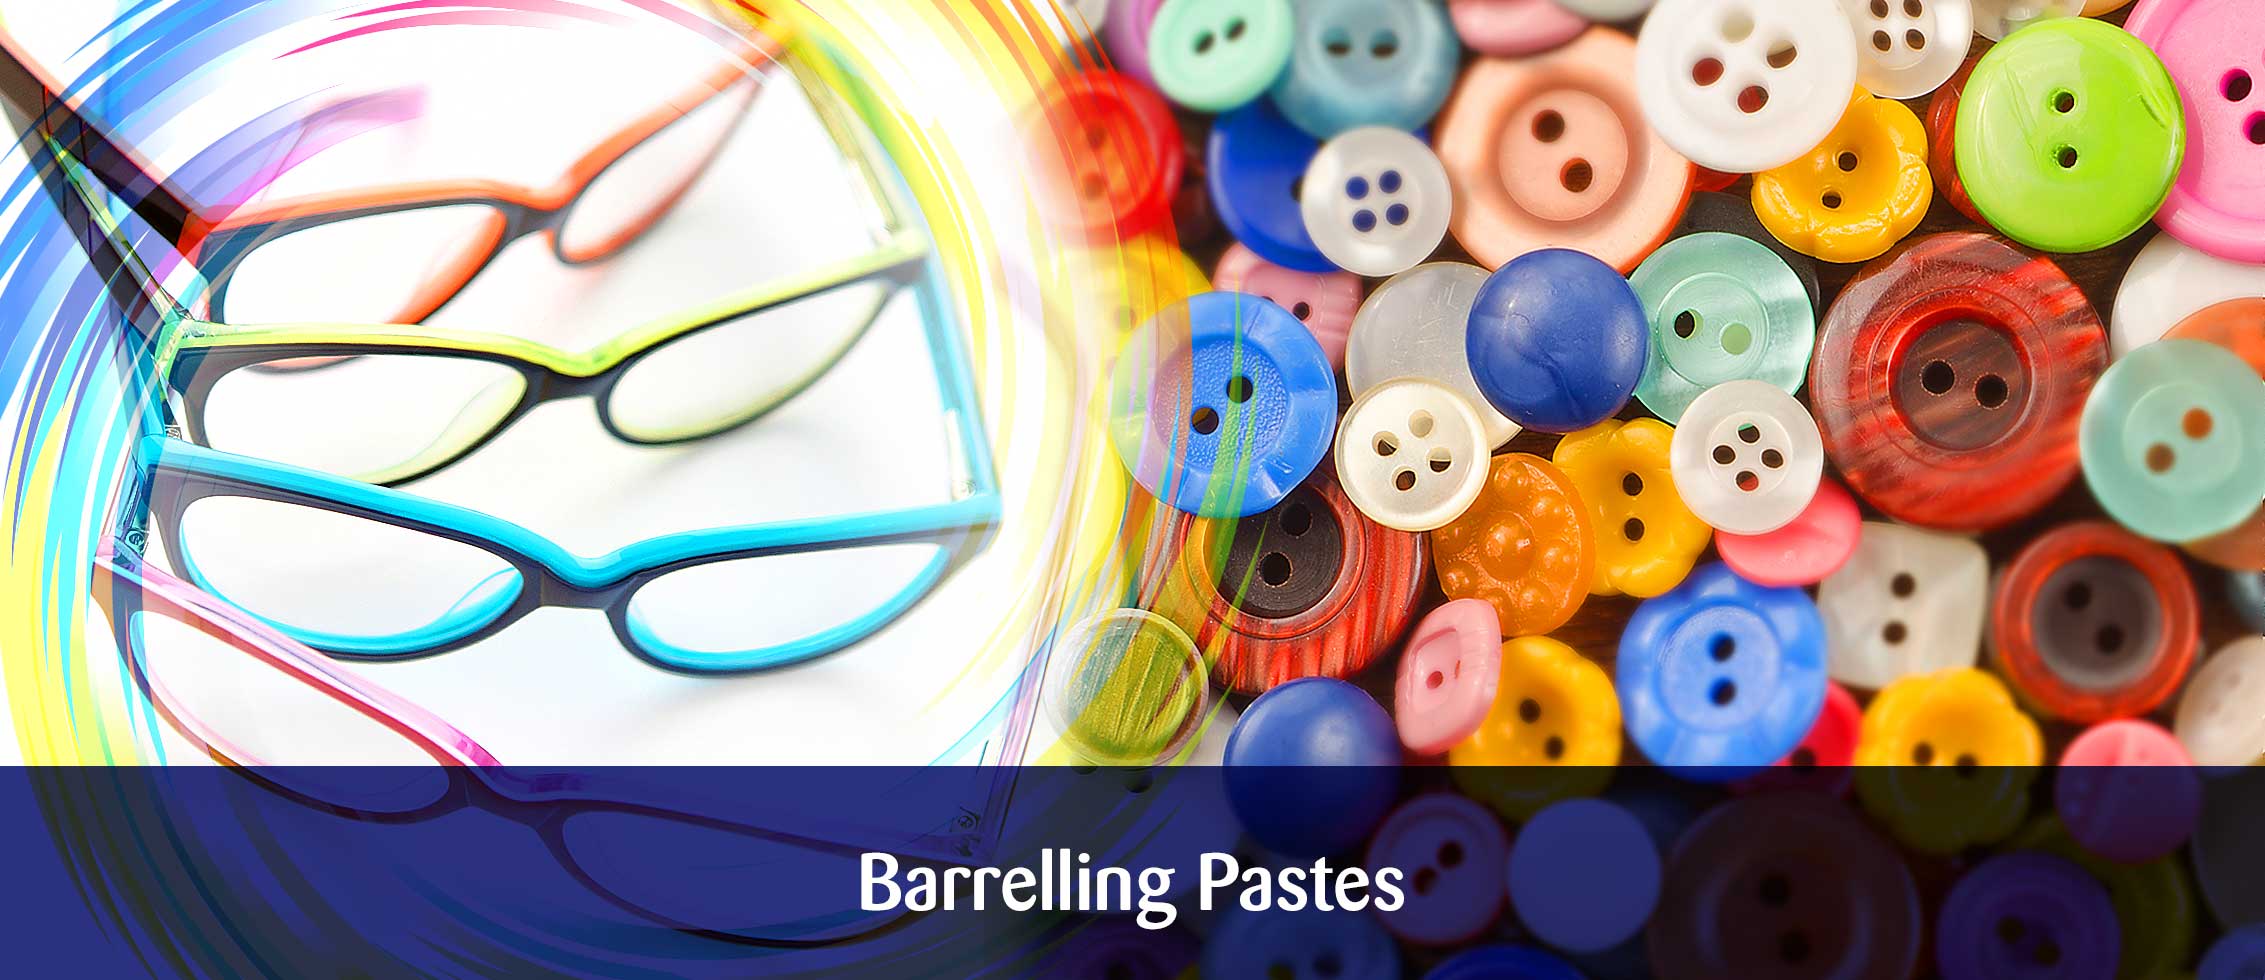 Barrelling Pastes